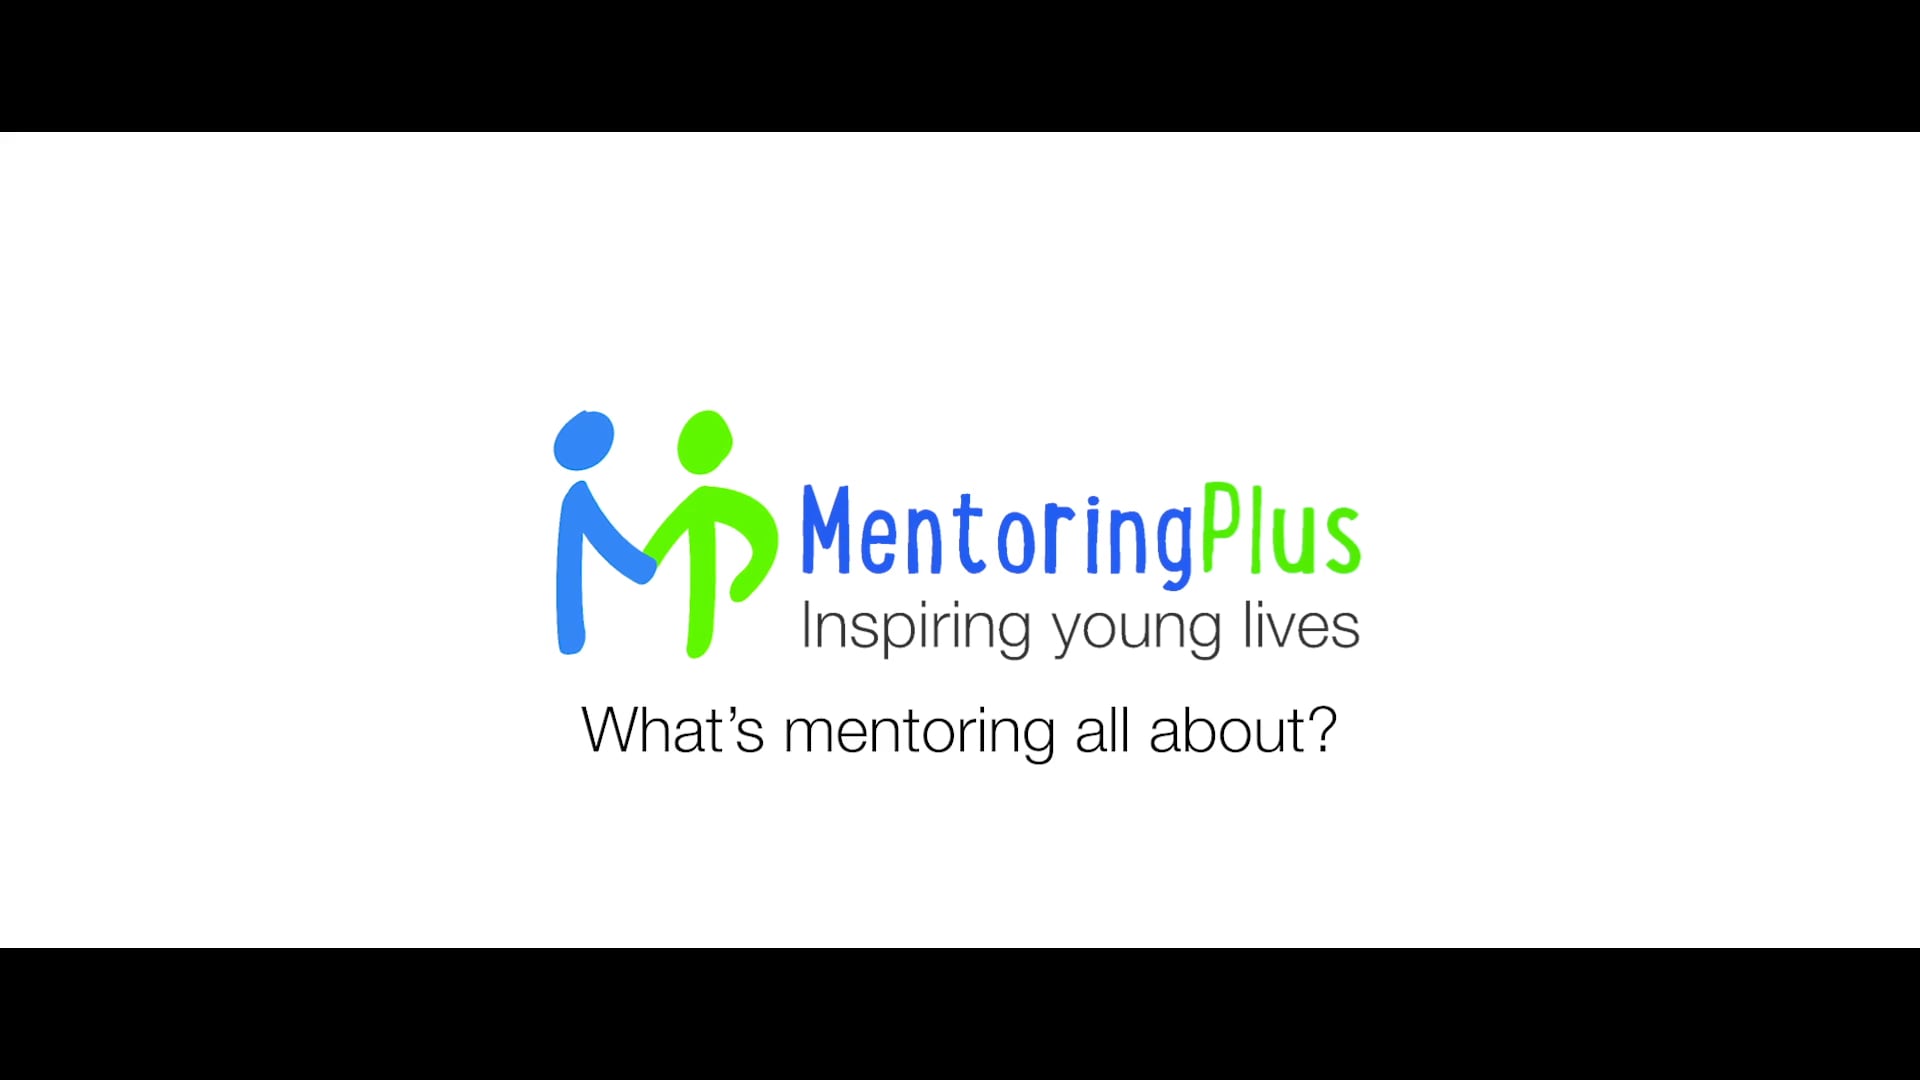 Mentoring Plus